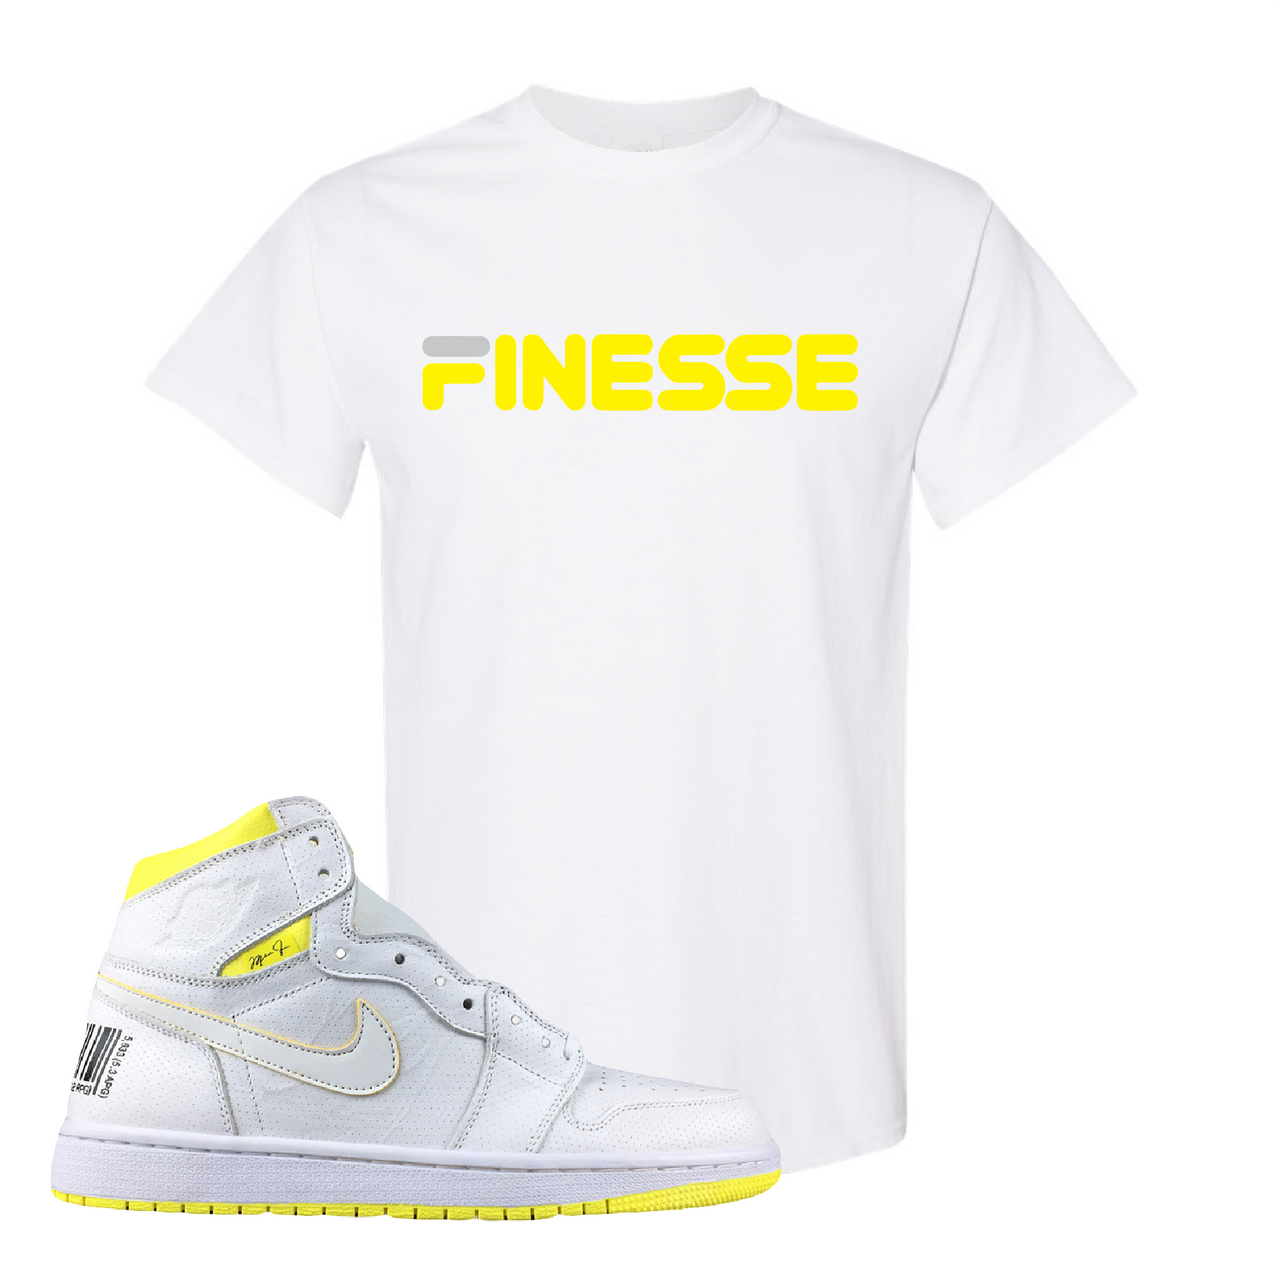 Jordan 1 First Class Flight Finesse Sneaker Matching White T-Shirt